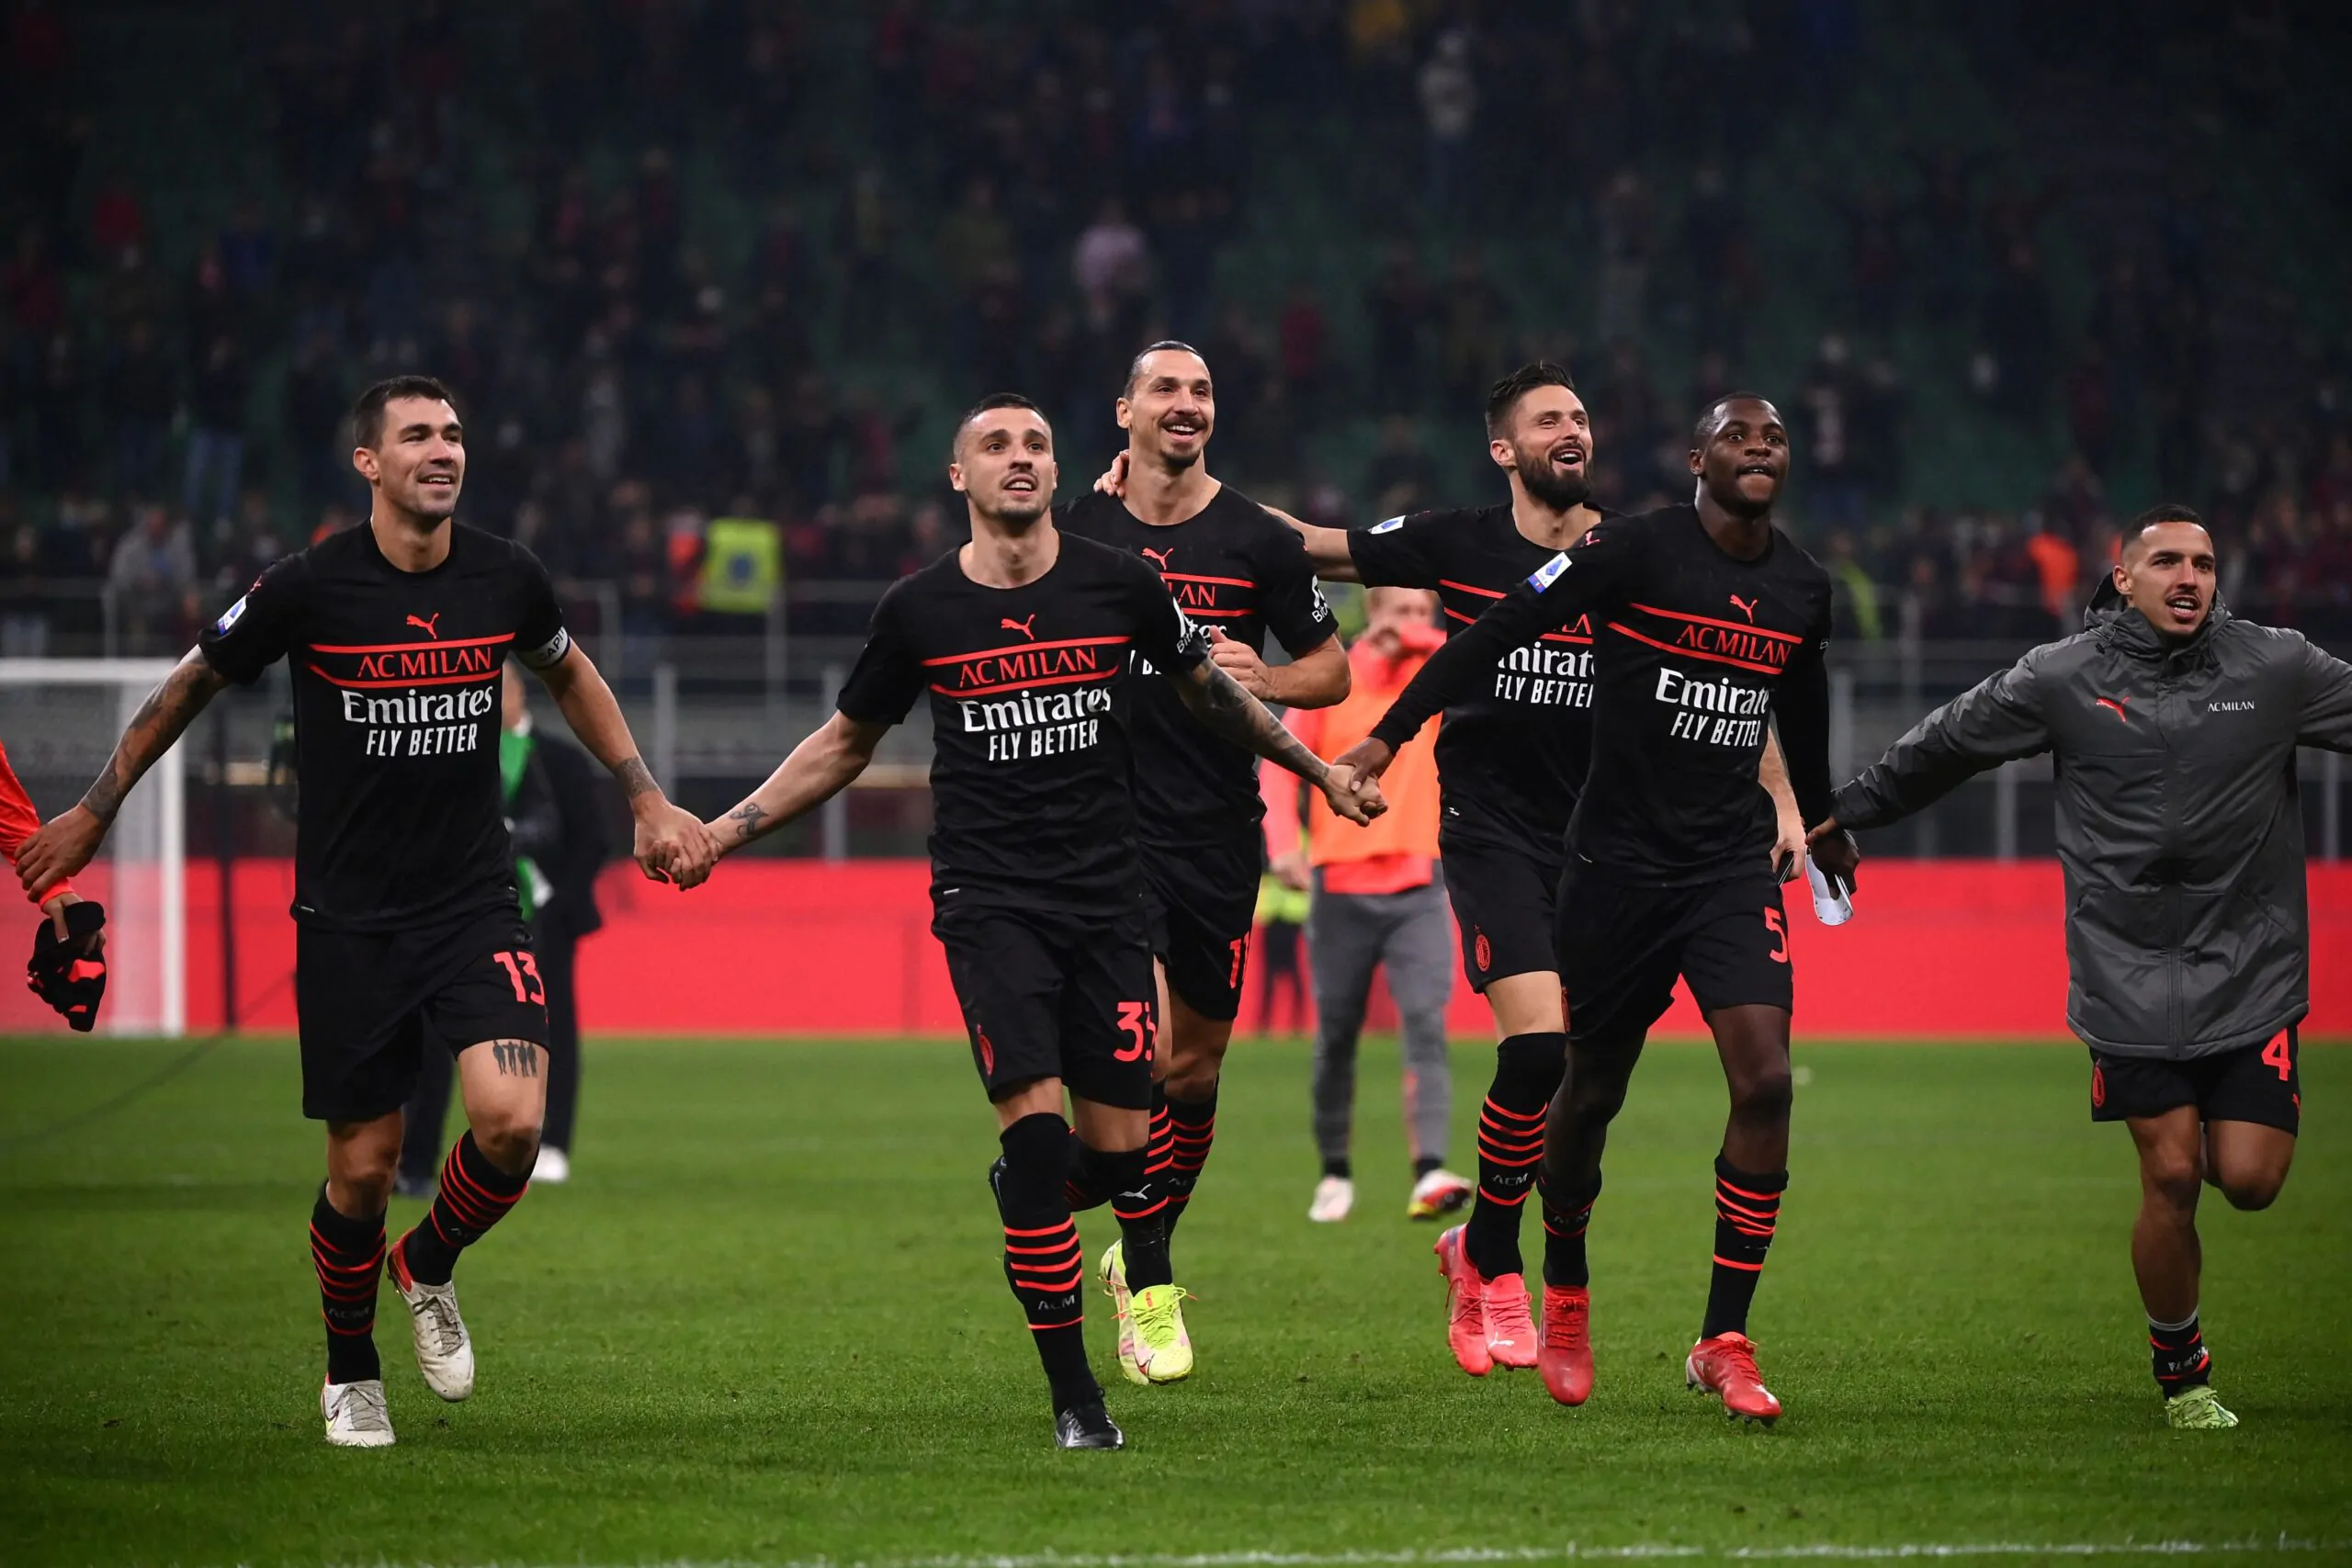 Calciomercato, contatti avviati con il Milan: cessione già a gennaio